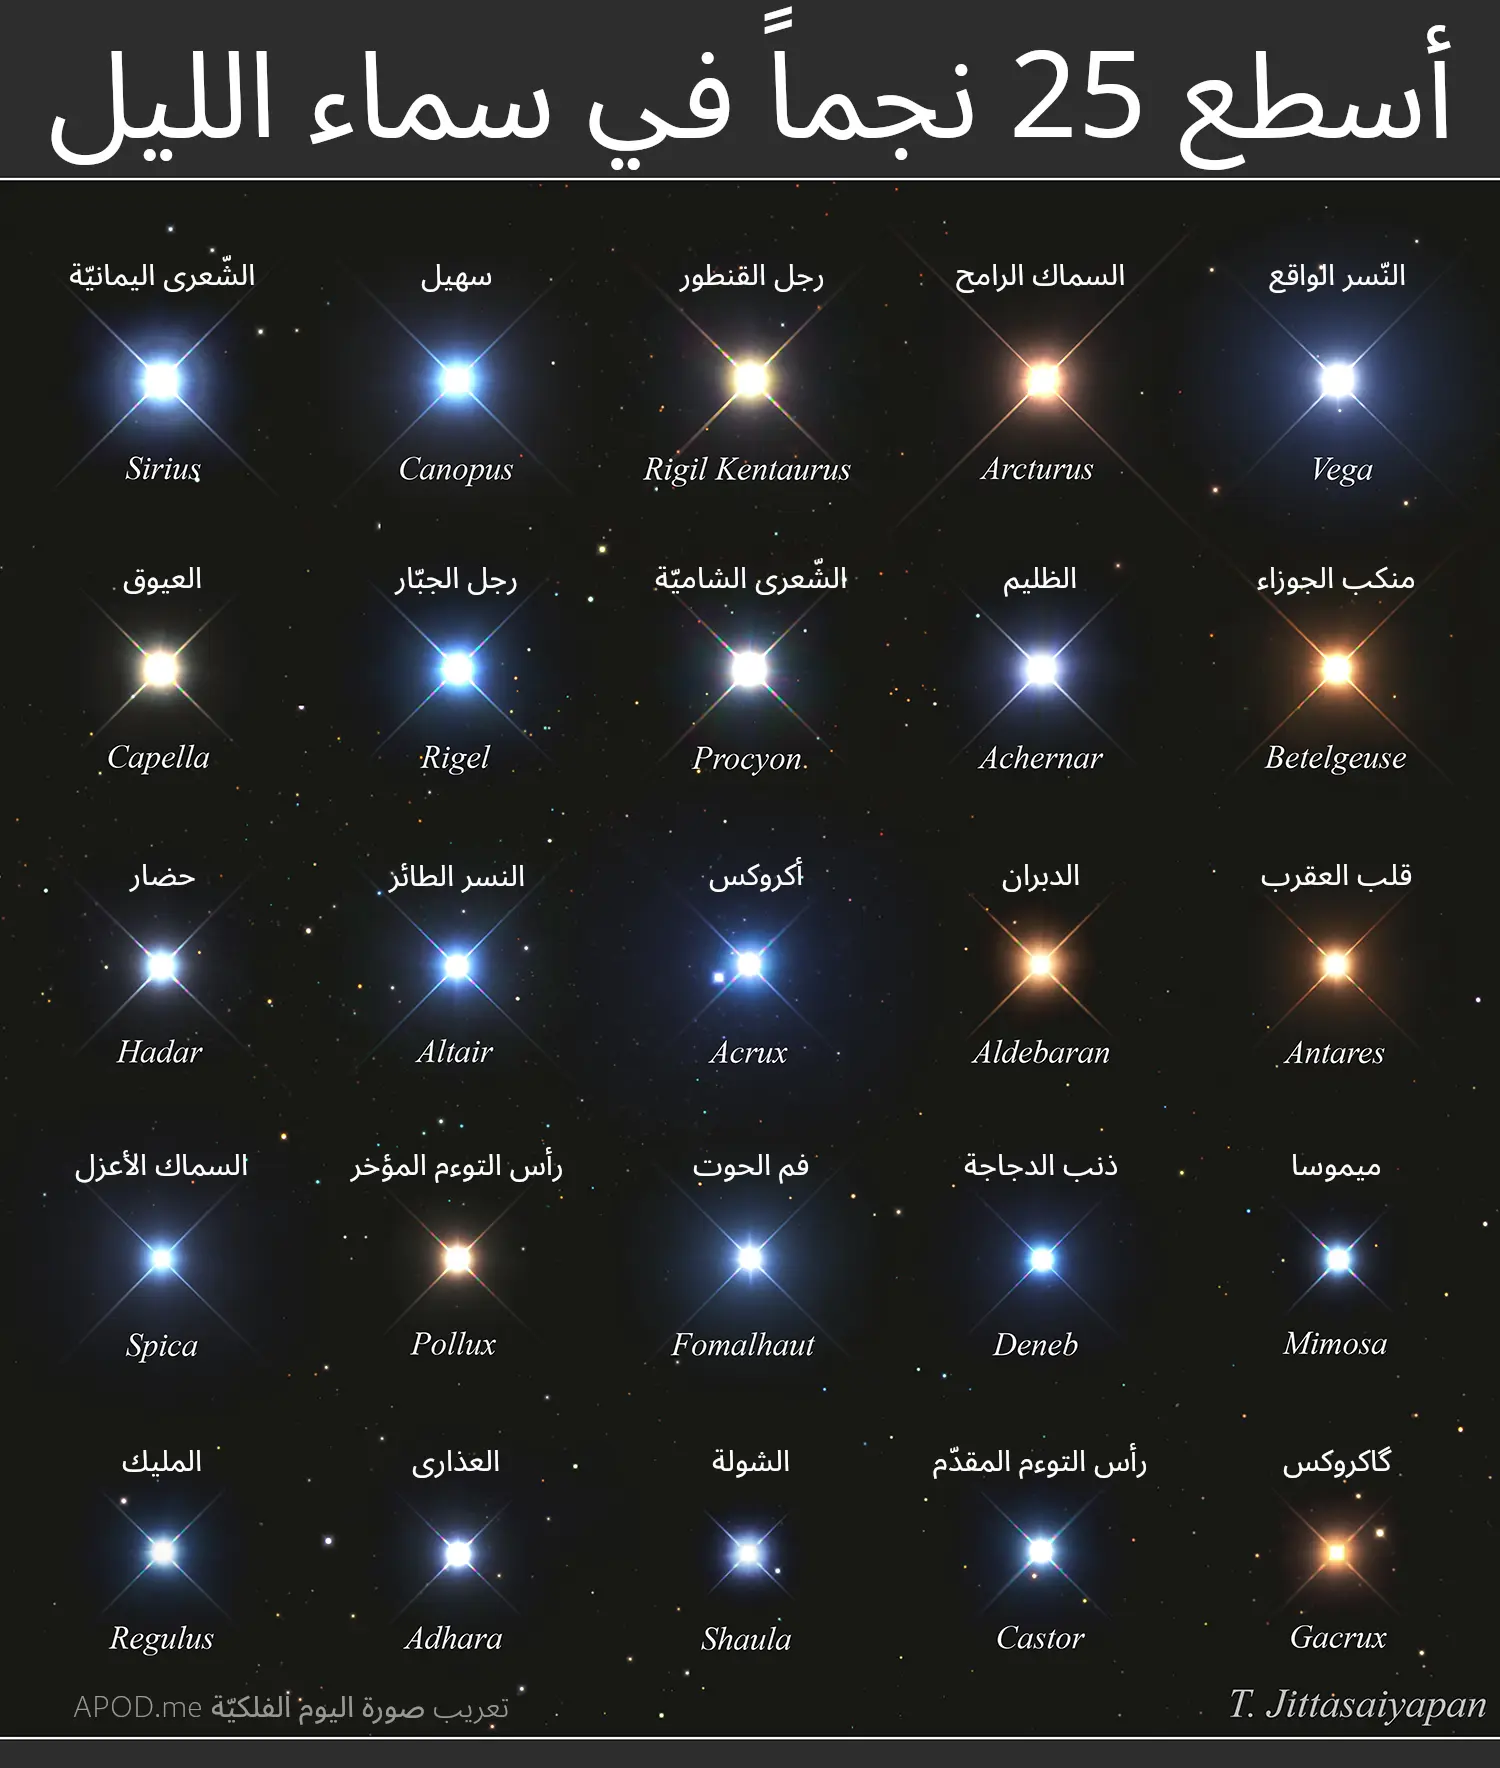 شبكة لأسطع 25 نجماً في الليل مع ألوانها المرئيّة وبوجود الأسطع بينها أعلى اليسار.